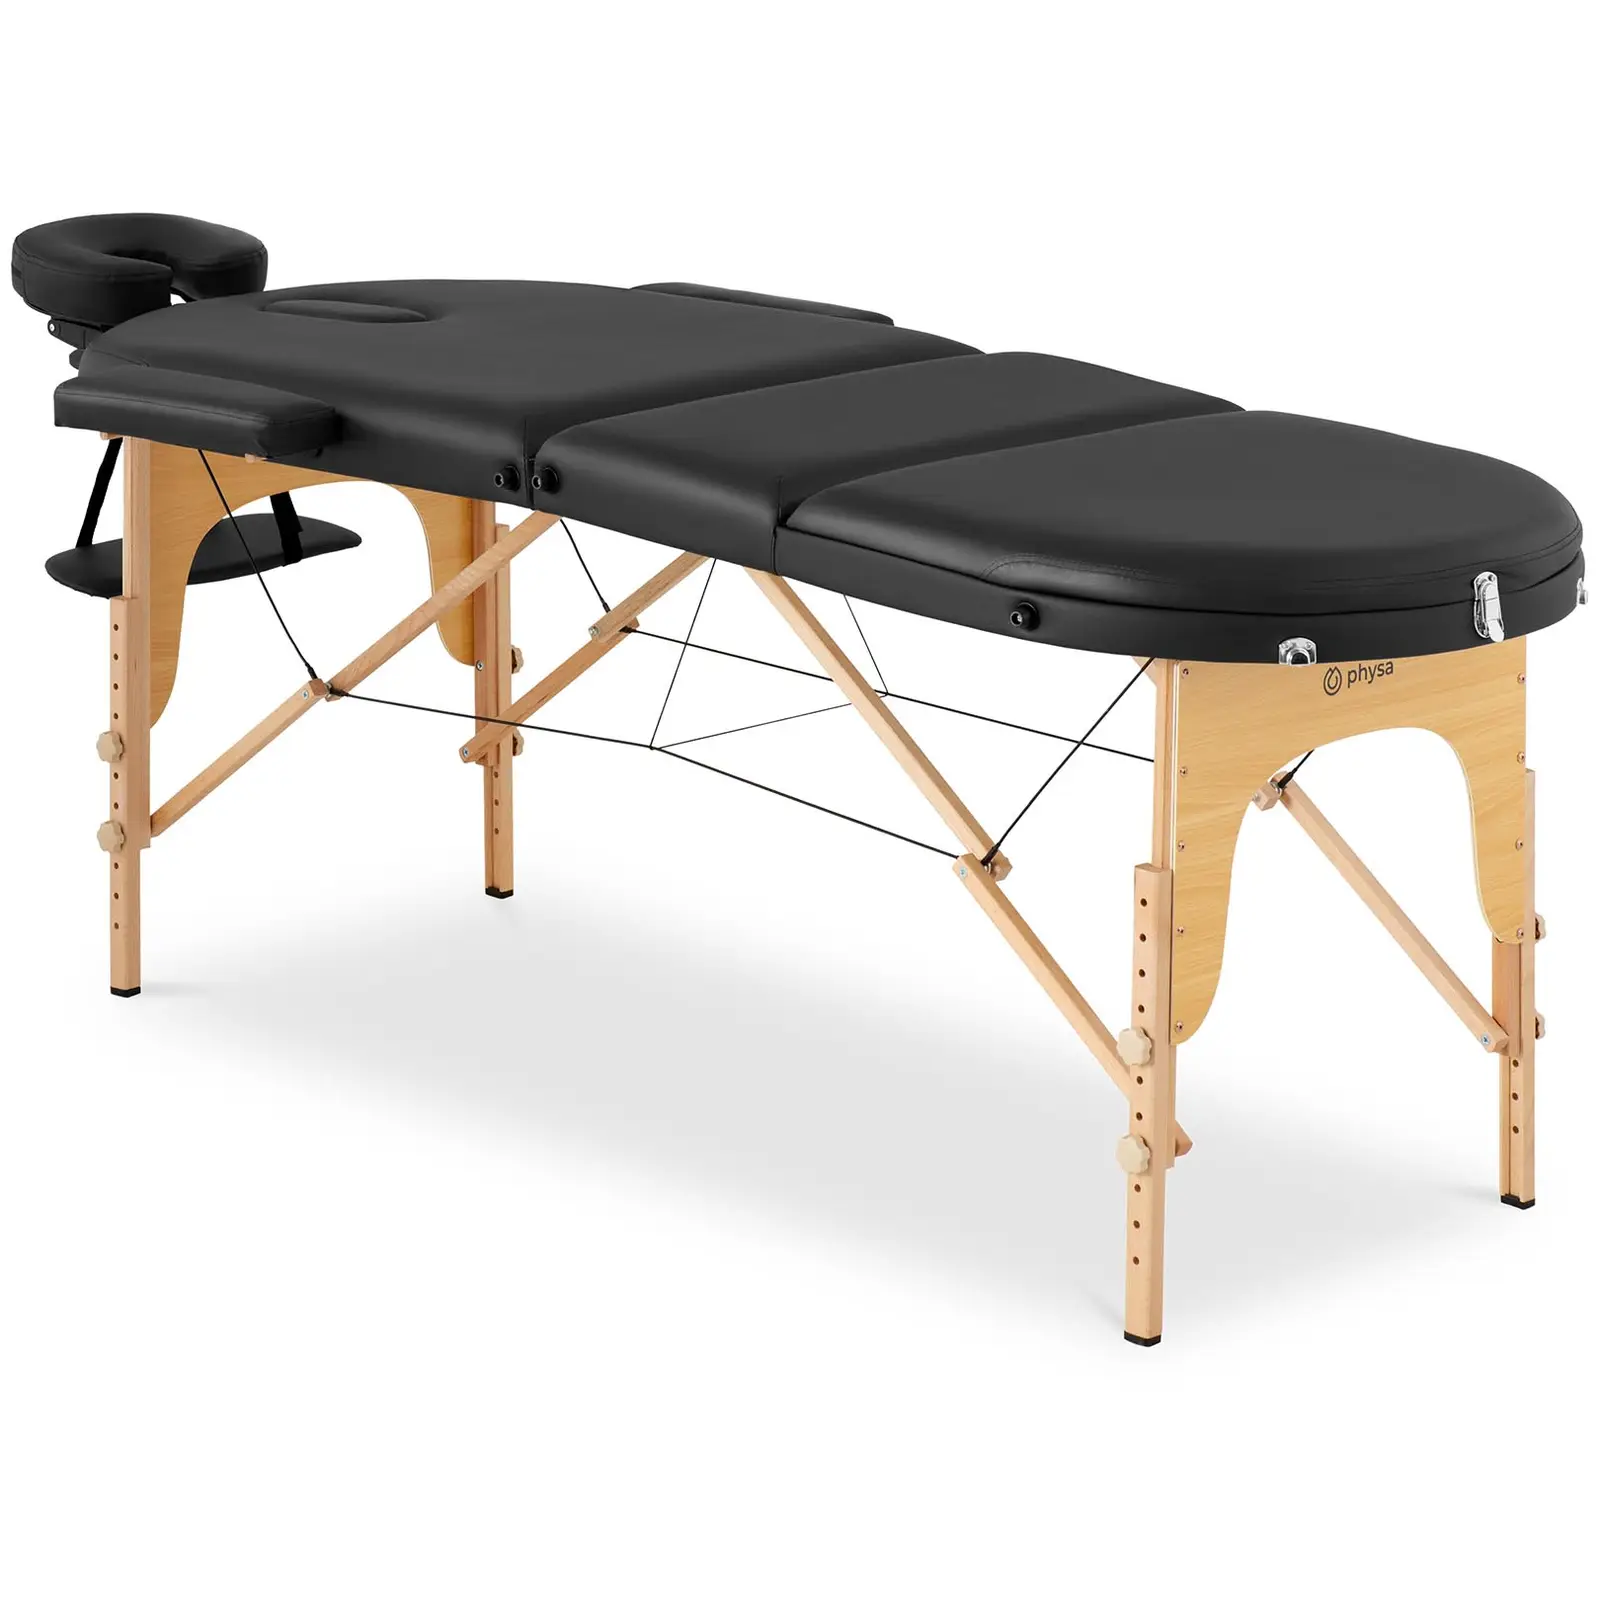 Lettino massaggio portatile - 185-211 x 70-88 x 63-85 cm - 227 kg - Nero